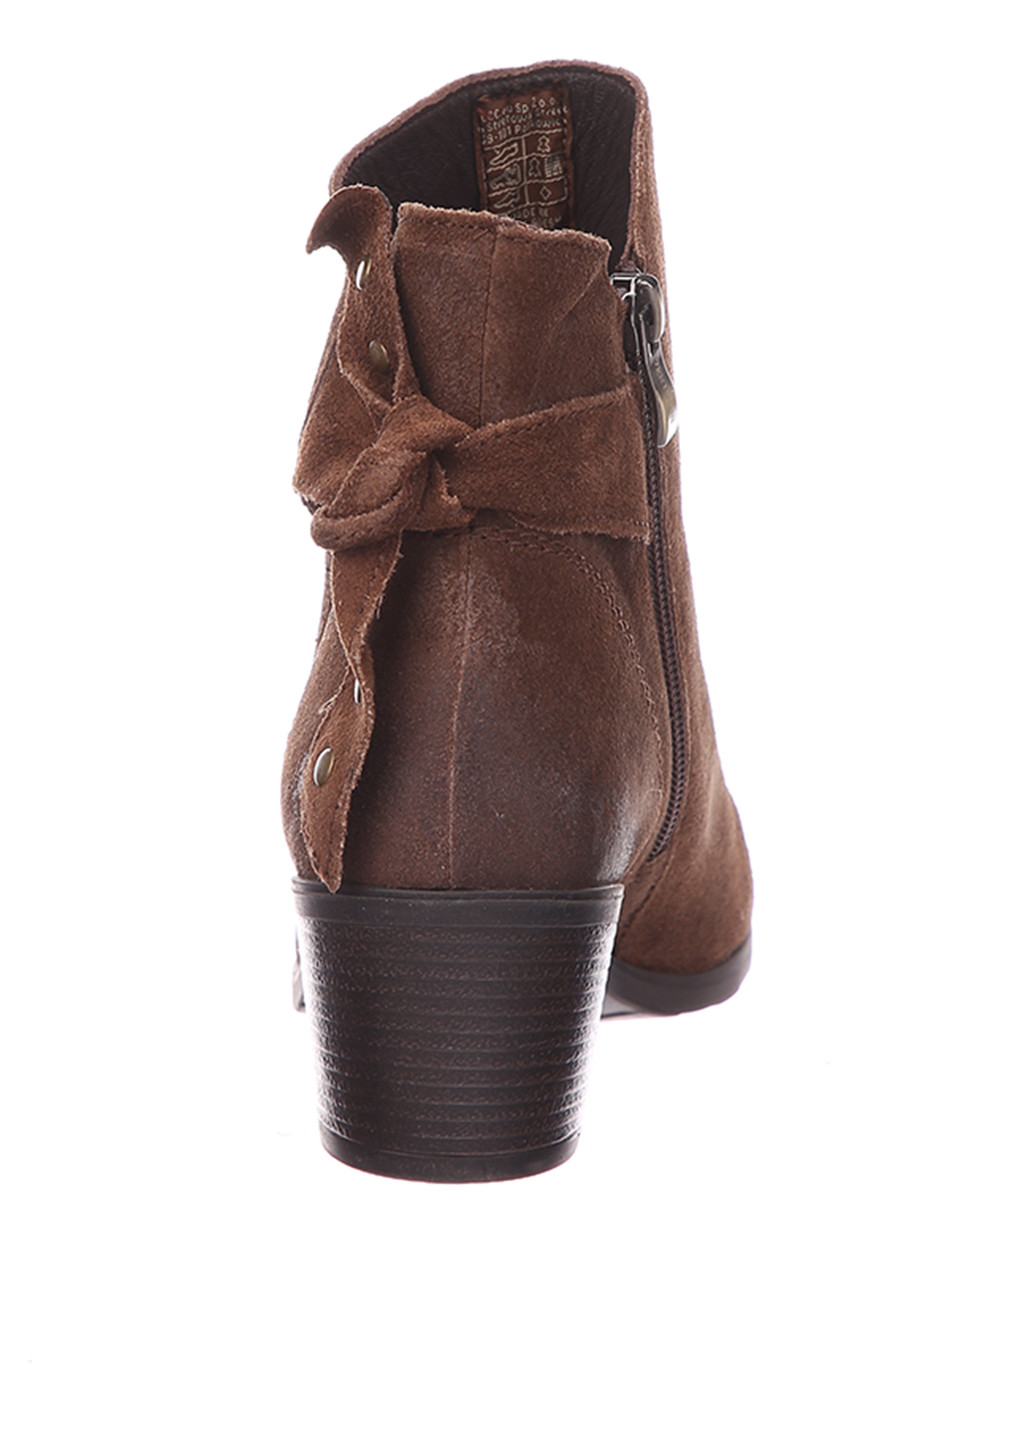 Осенние ботинки казаки Venturini завязки, с потертостями, с заклепками из натуральной замши